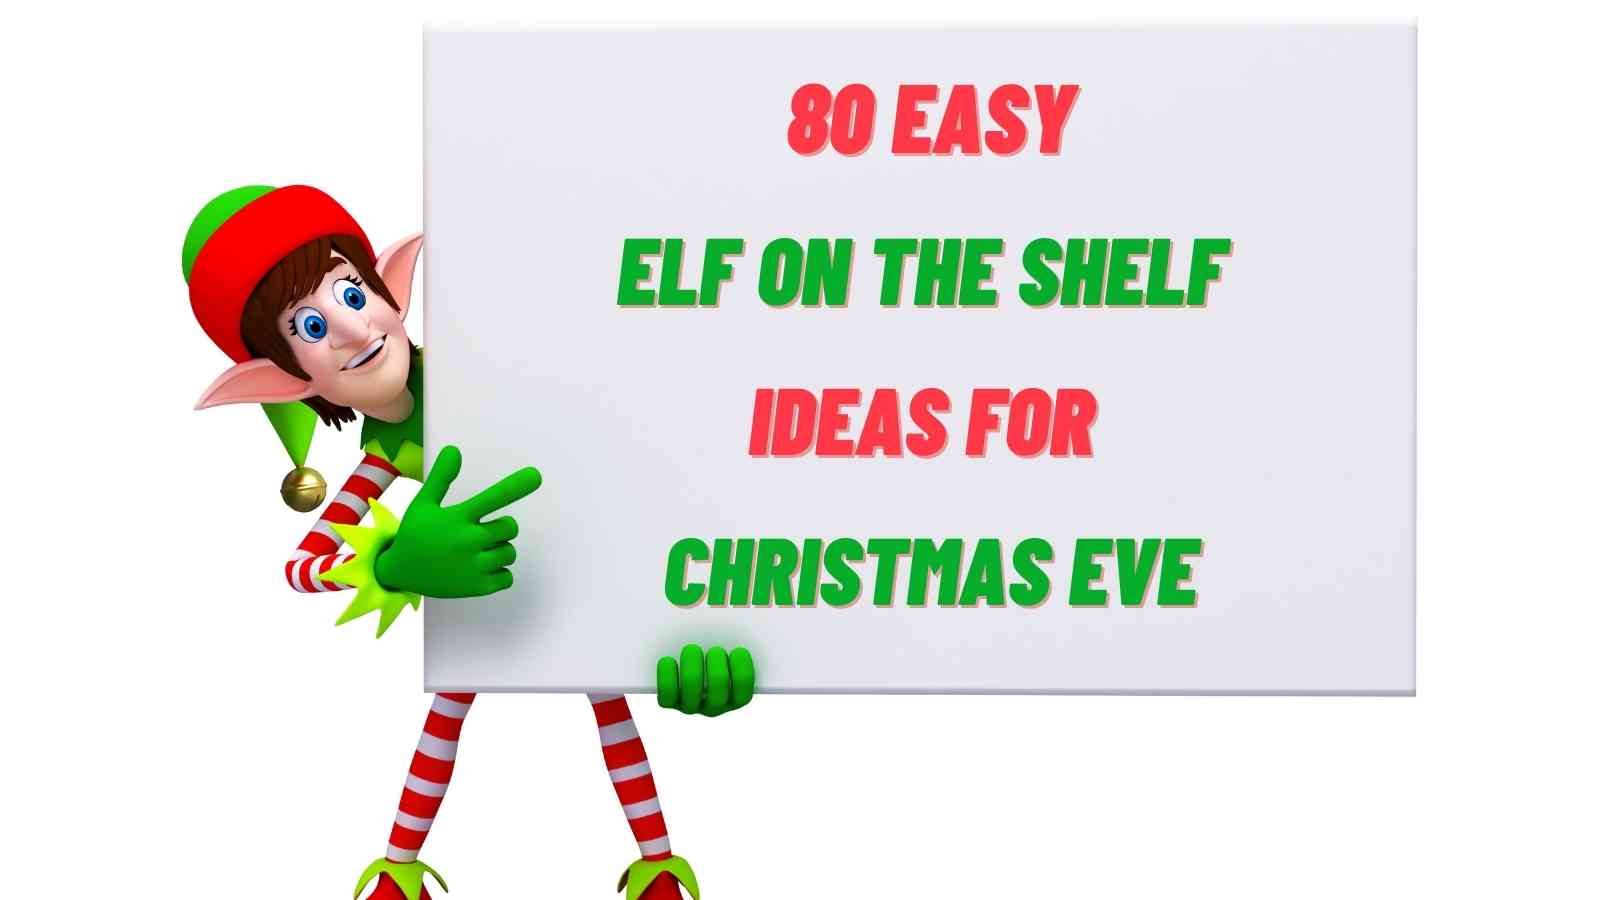 80 Easy Elf on the Shelf Ideas For Christmas Eve